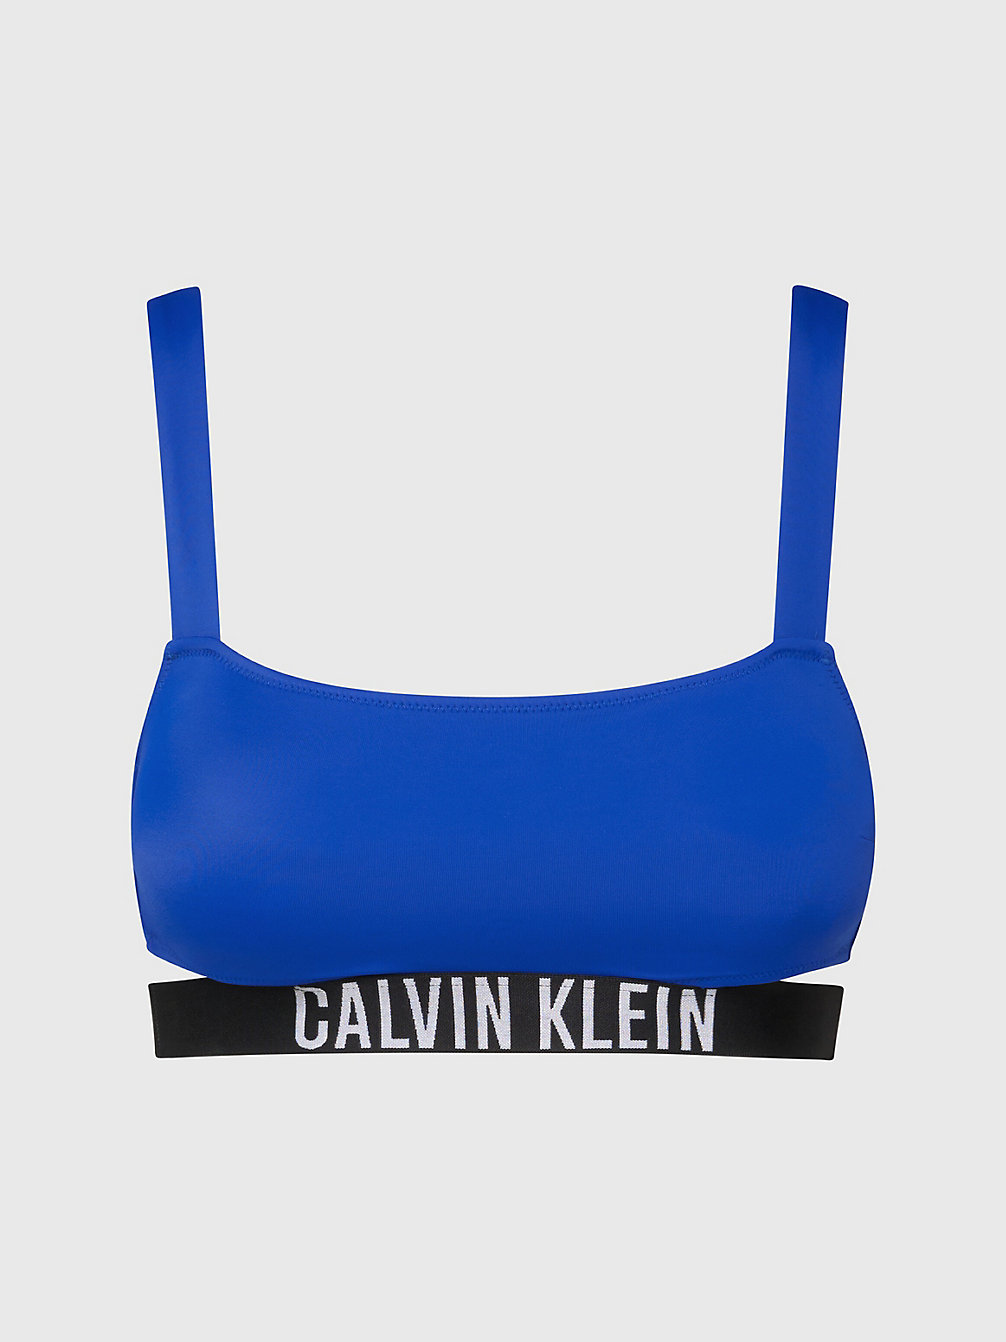 BISTRO BLUE Bralette Bikini-Top - Intense Power undefined Damen Calvin Klein